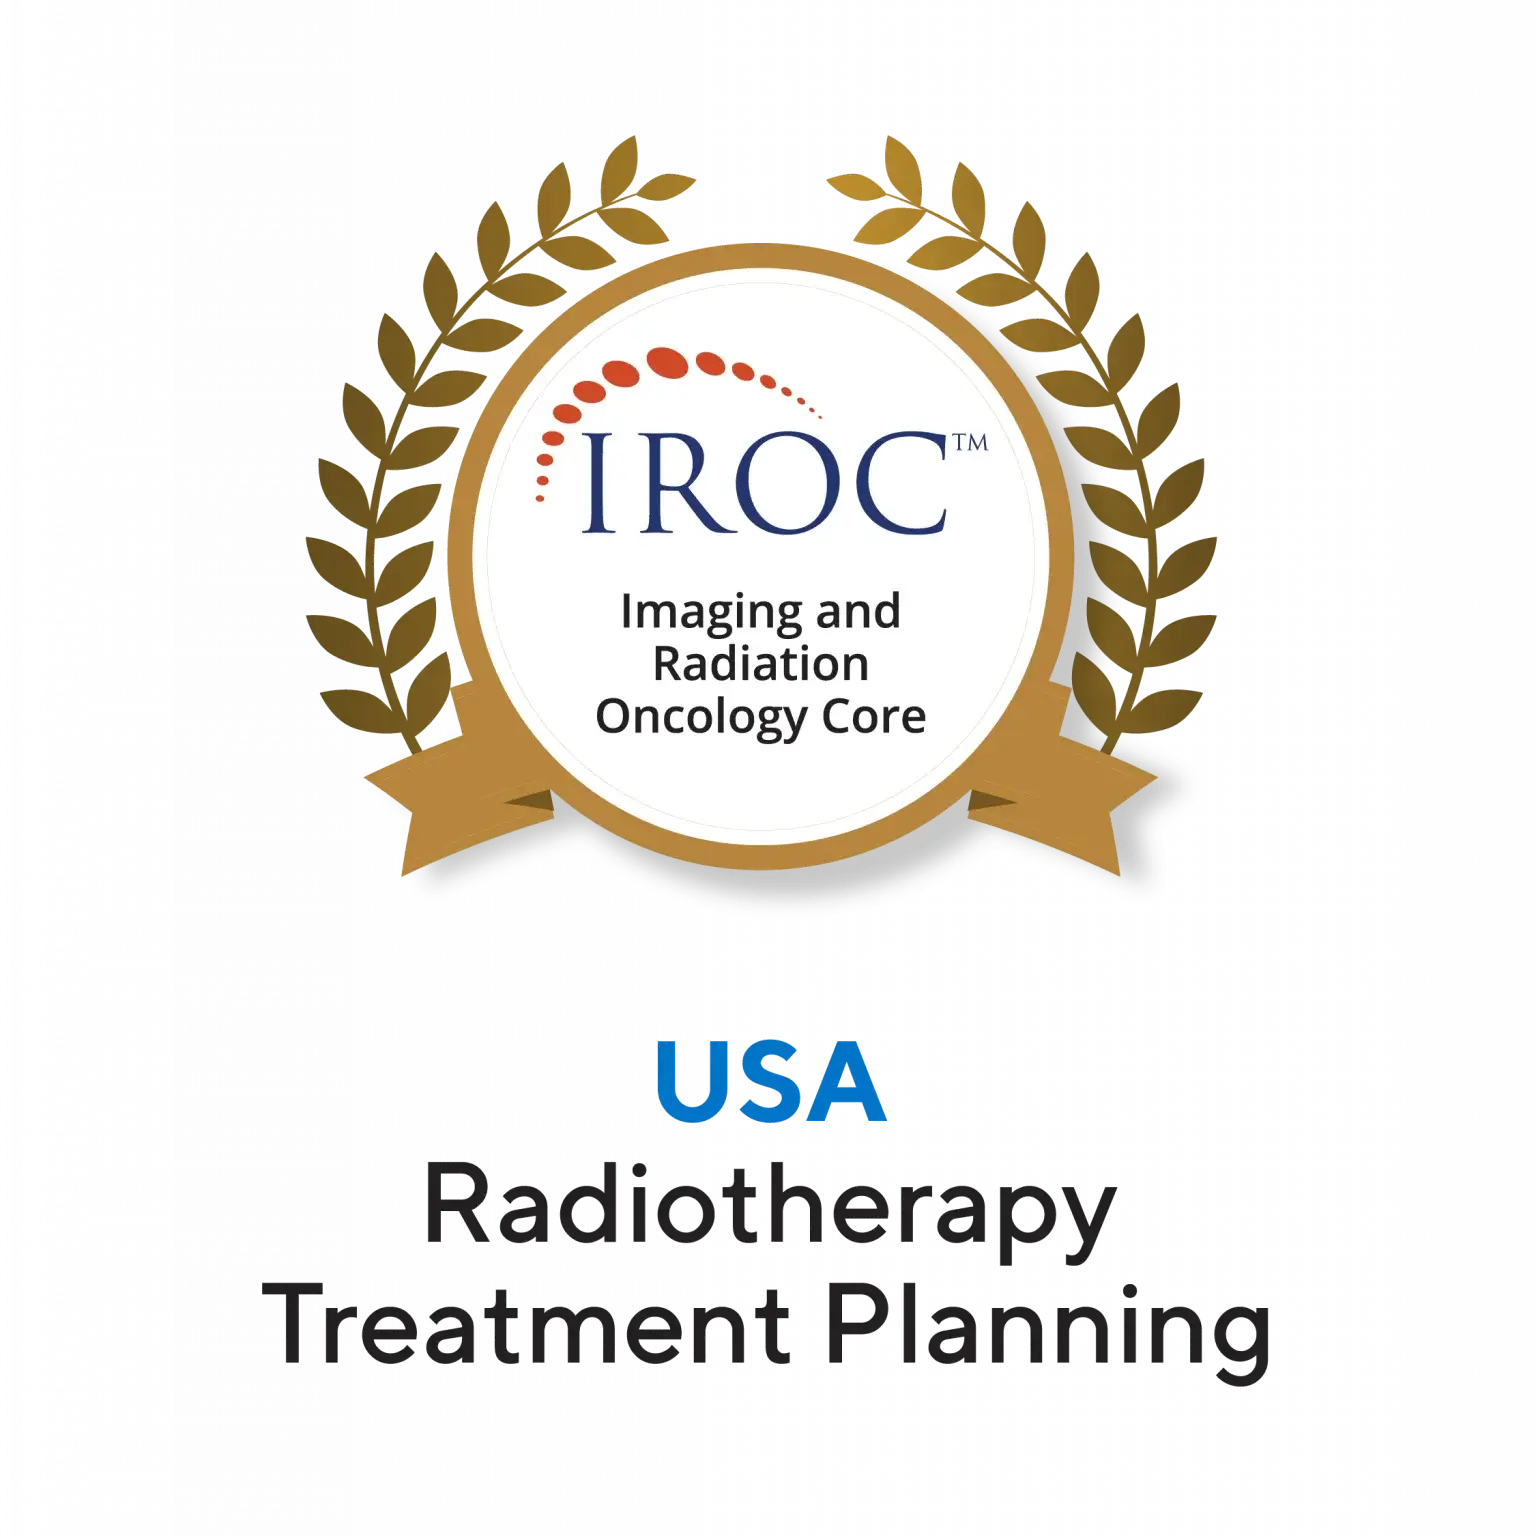 usa-radiotherapy-treatment-planning-awards-beacon-hospital-malaysia